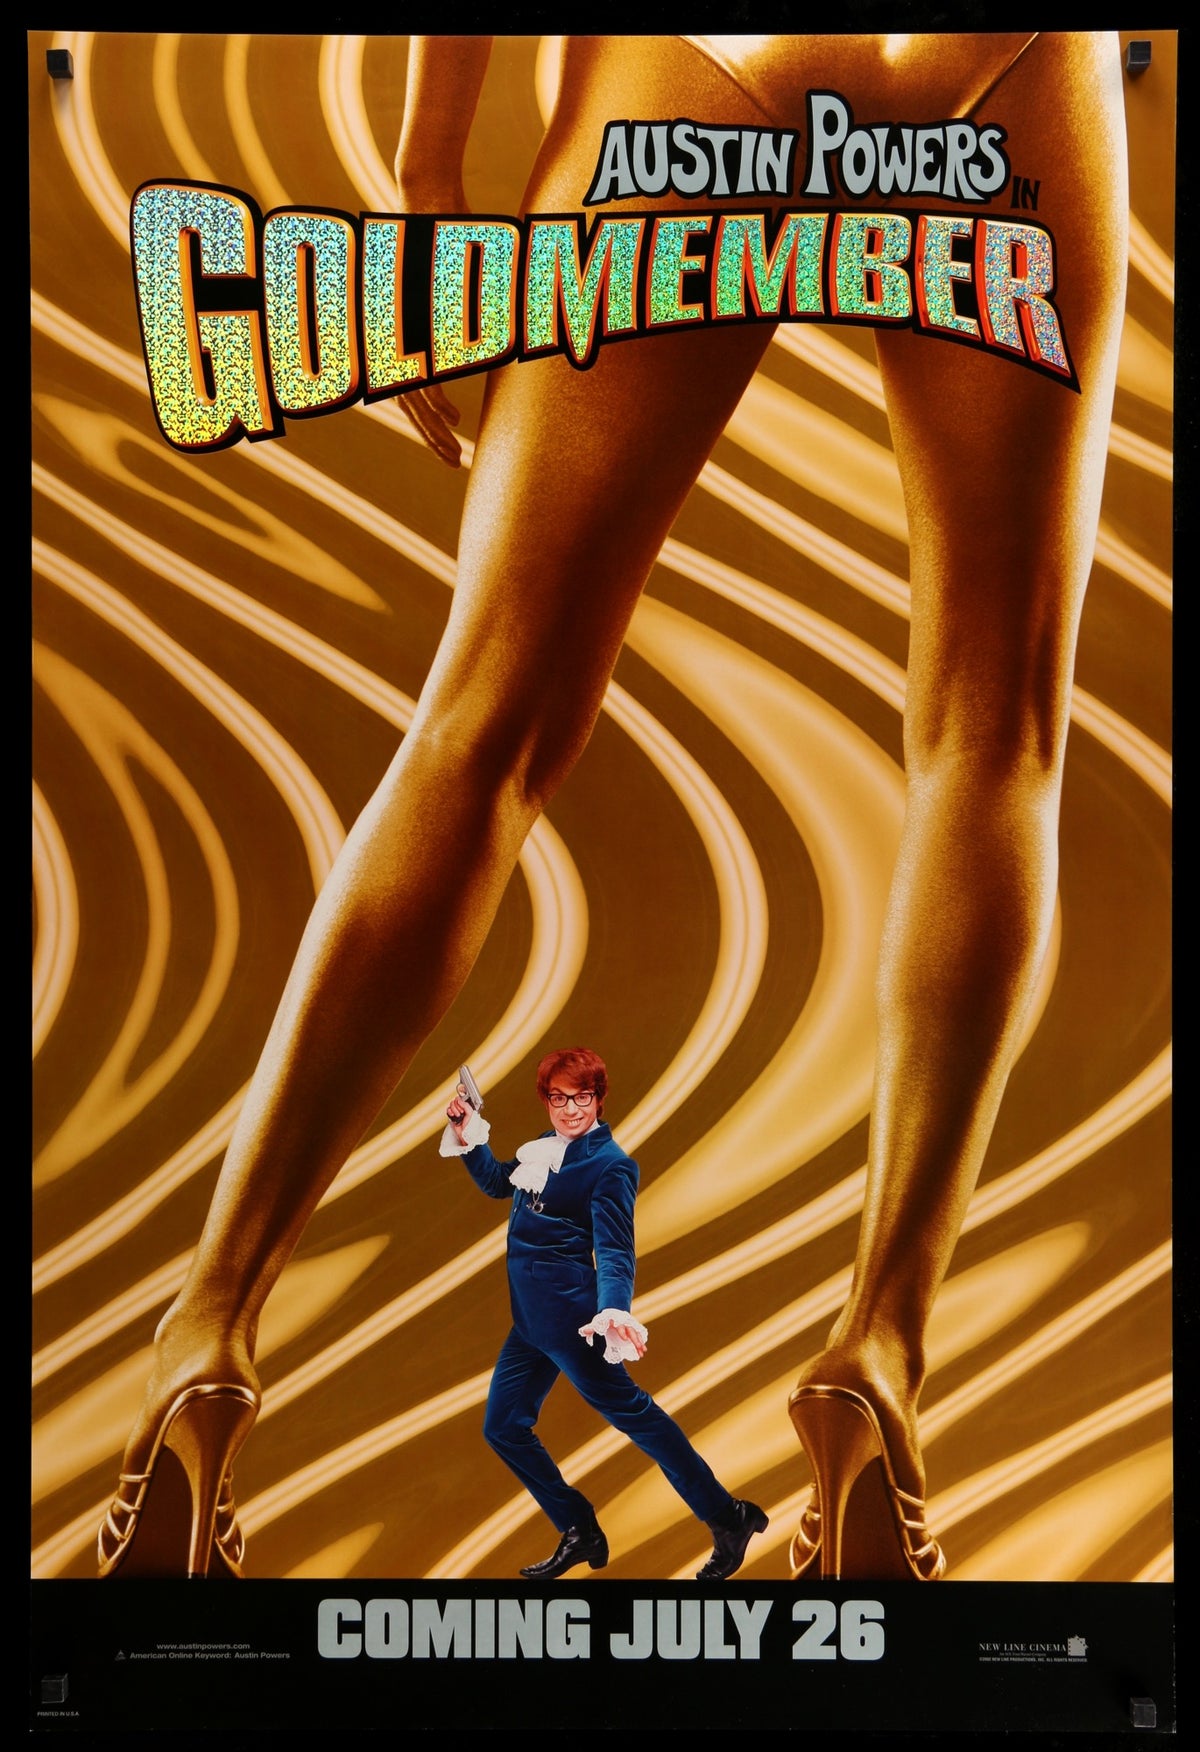 Austin Powers in Goldmember (2002) original movie poster for sale at Original Film Art